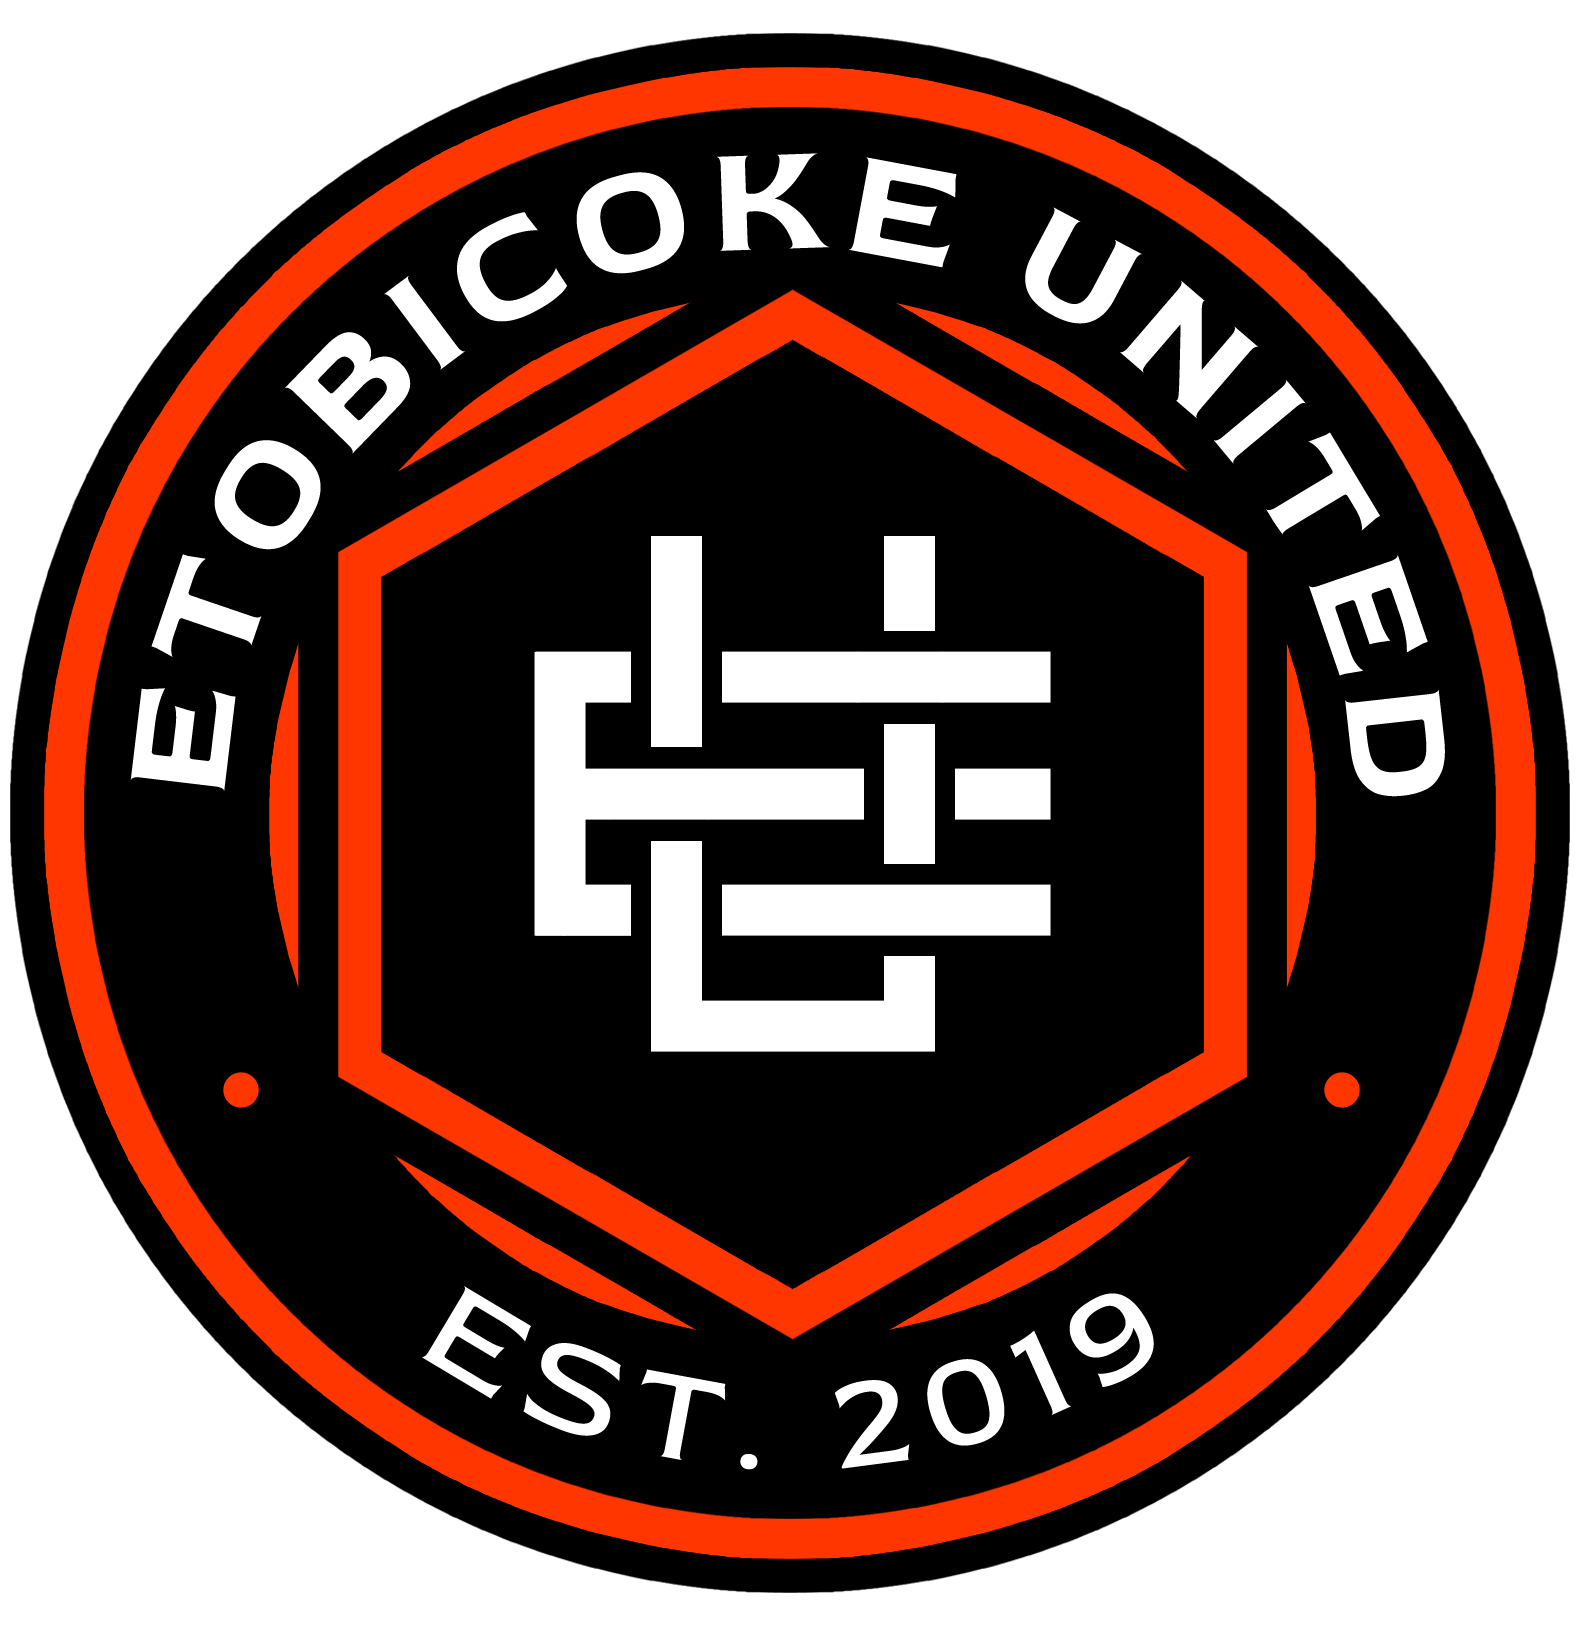 Etobicoke United